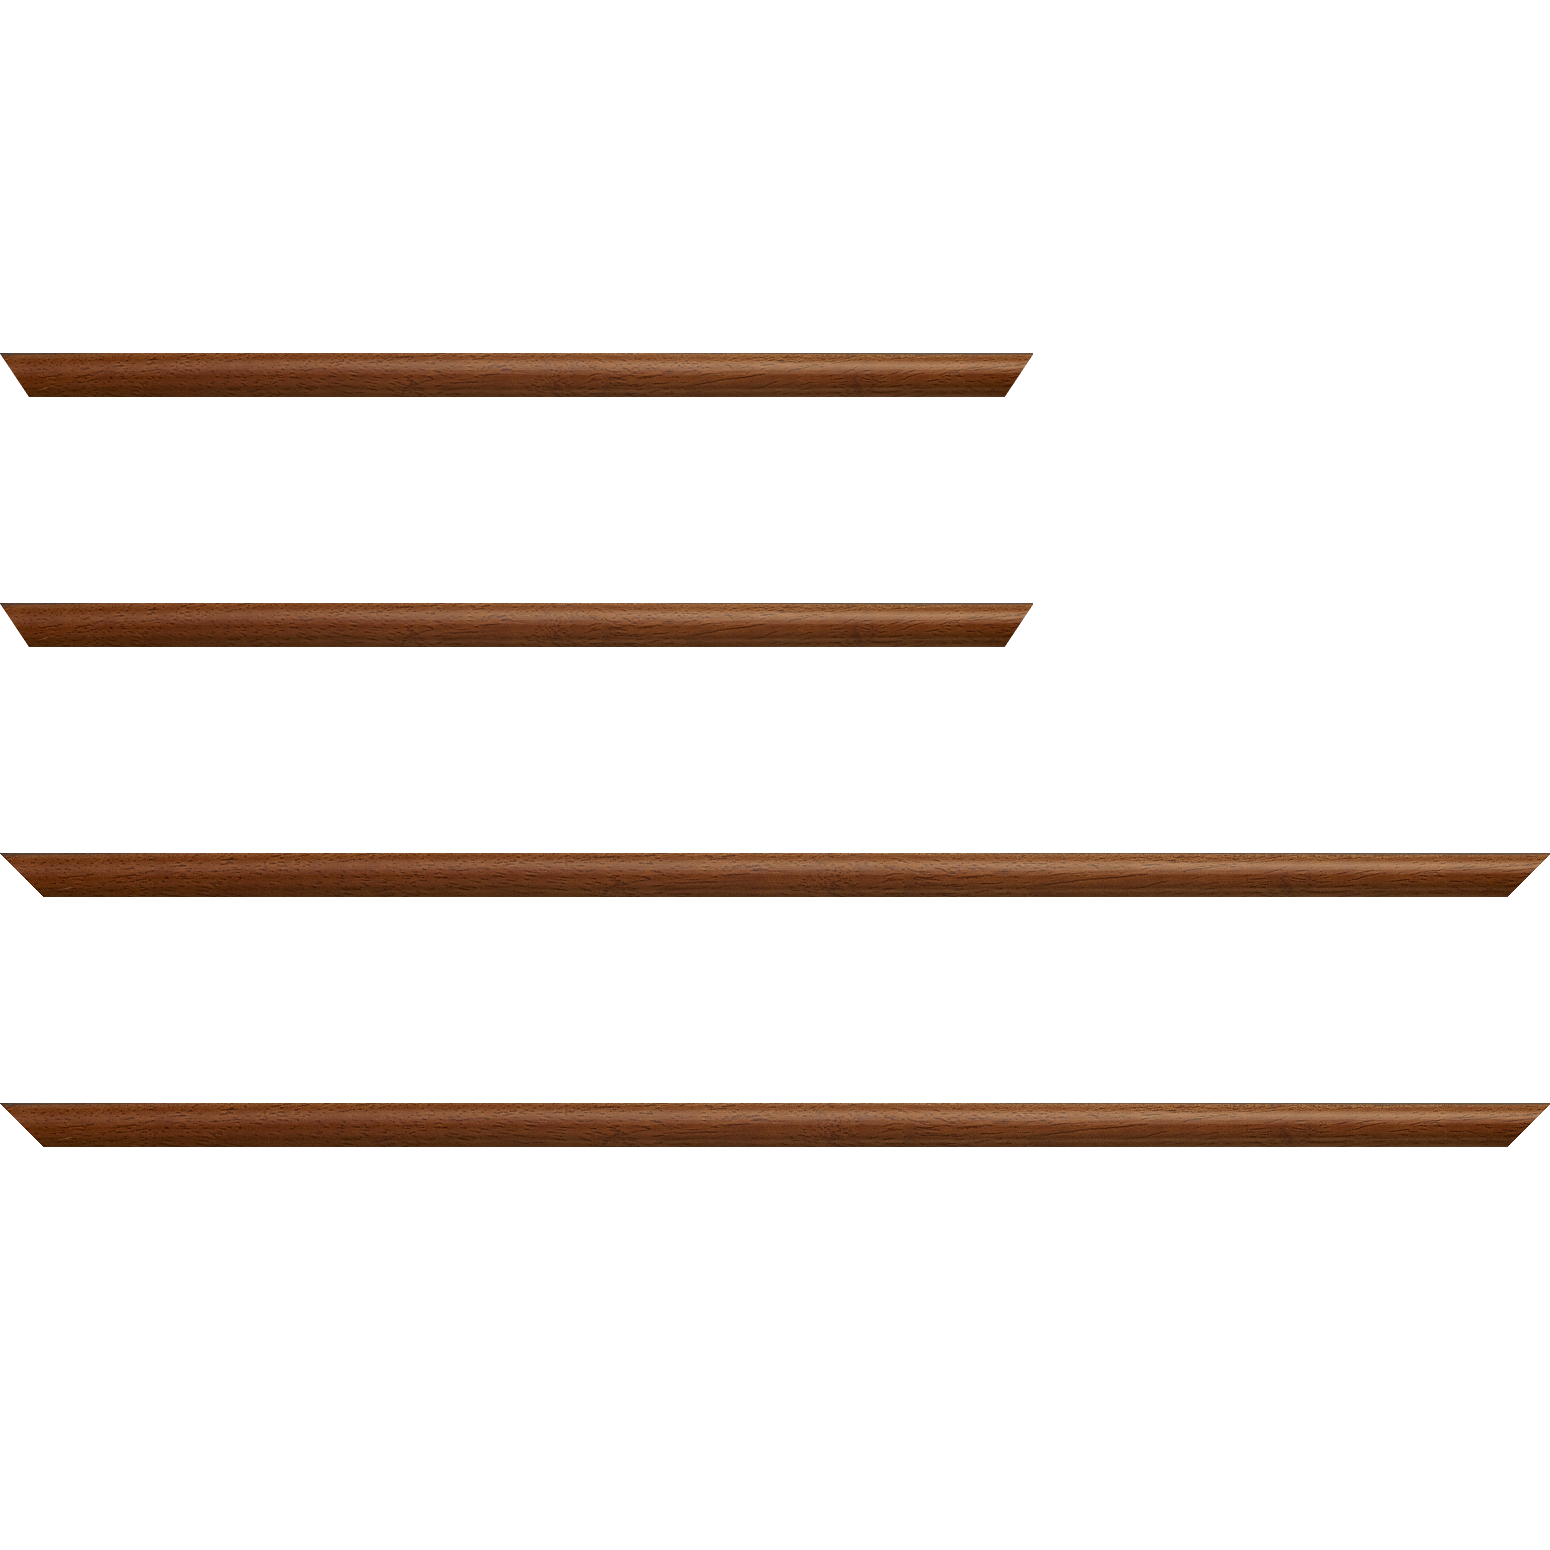 Baguette bois profil demi rond largeur 1.5cm couleur marron ton bois extérieur ébène - 28x34